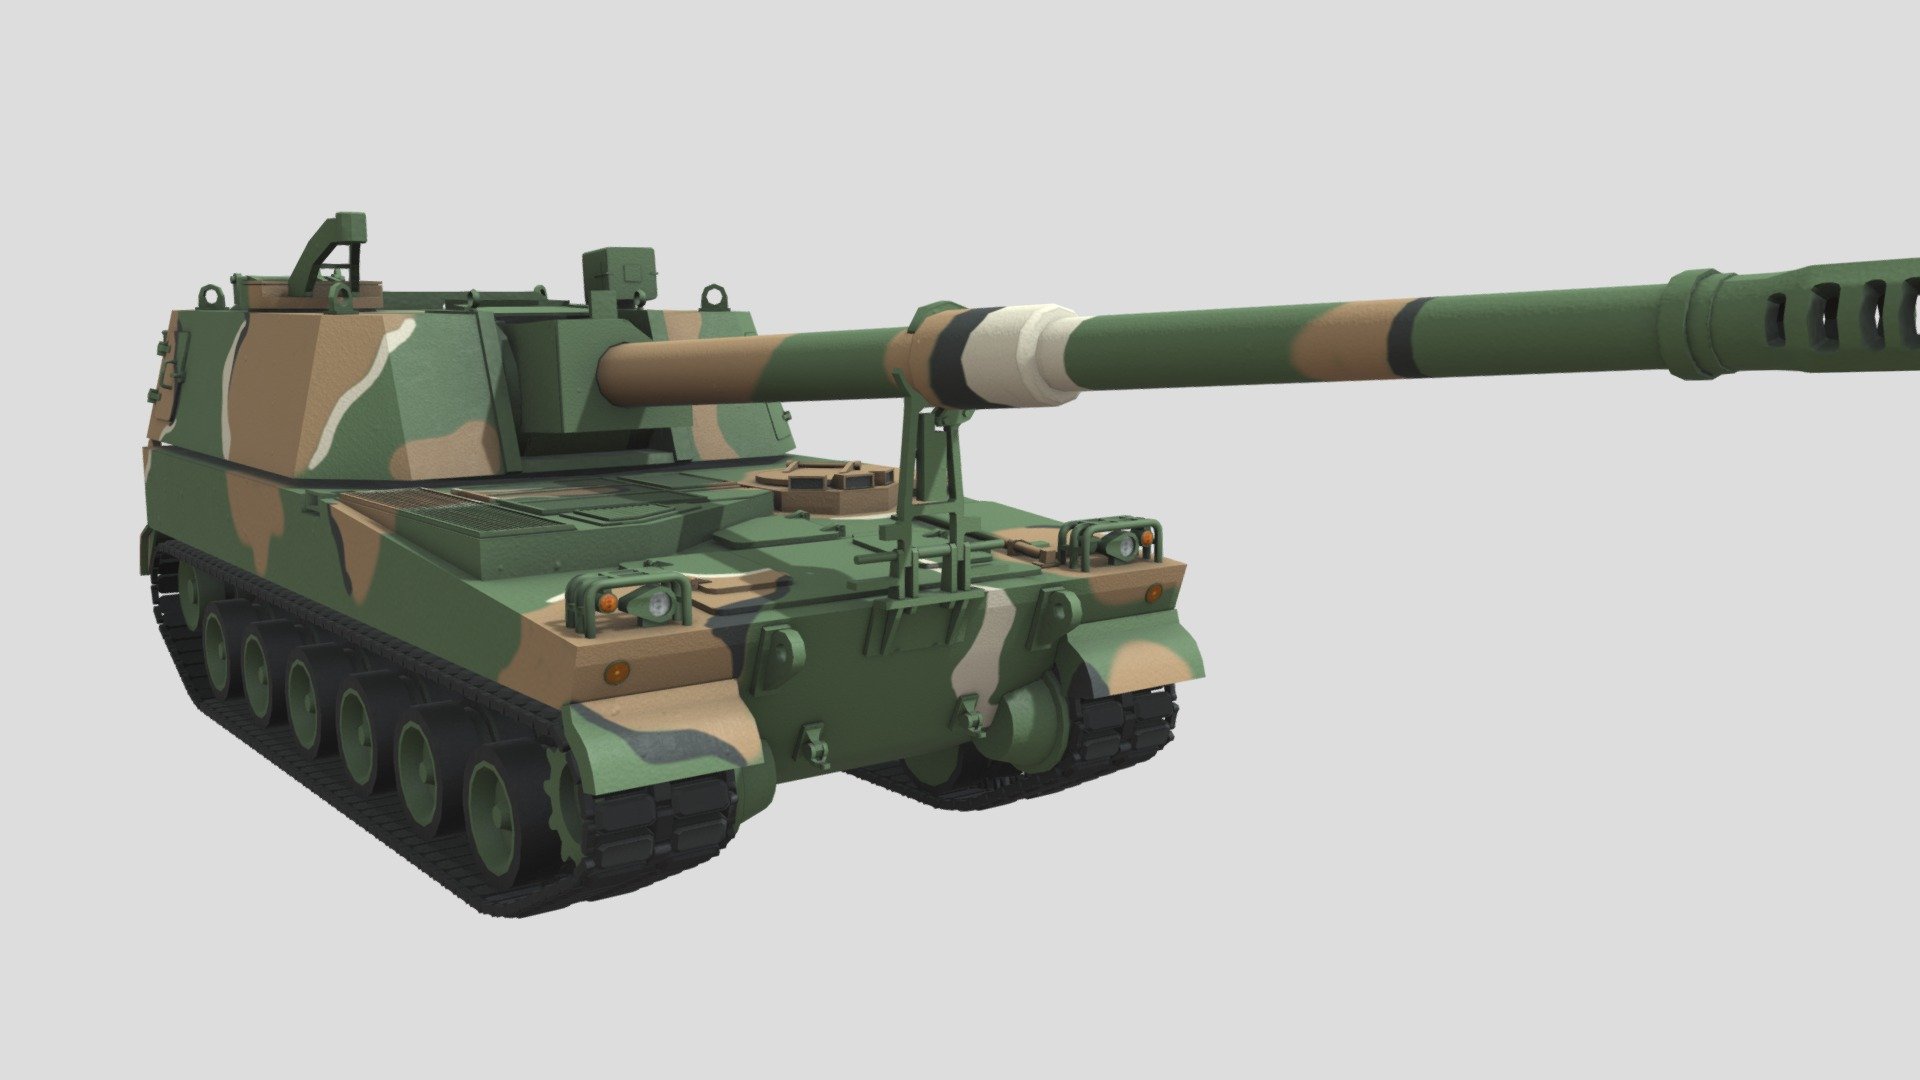 K-9 Thunder 155 mm self-propelled howitzer - K-9 Thunder - 3D model by Uniform008 3d model